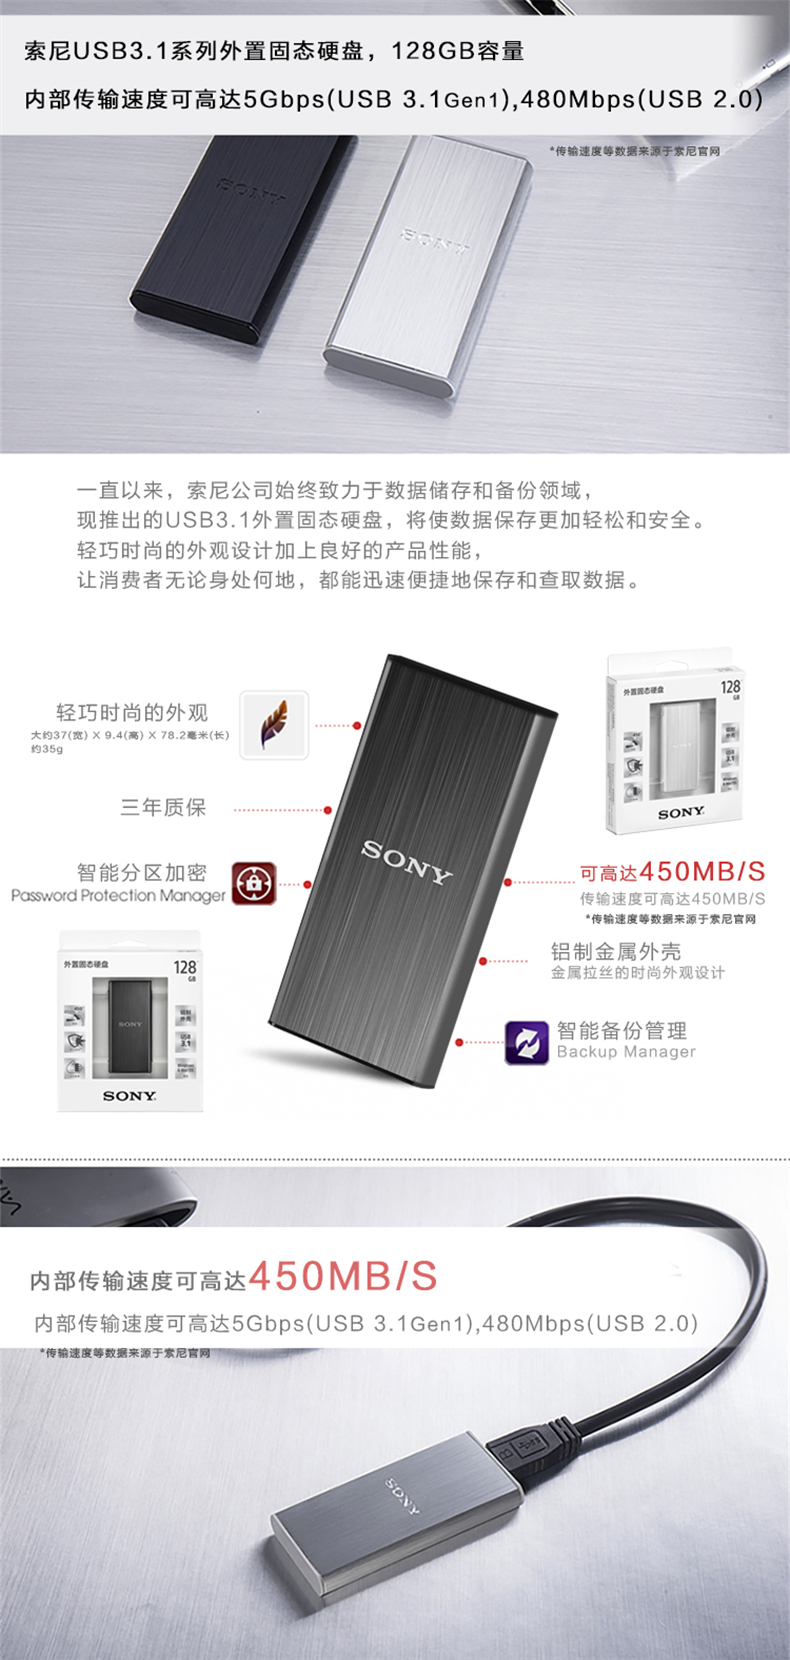 索尼(SONY)外置固态硬盘 128GB SL-BG1/SC2(银色）